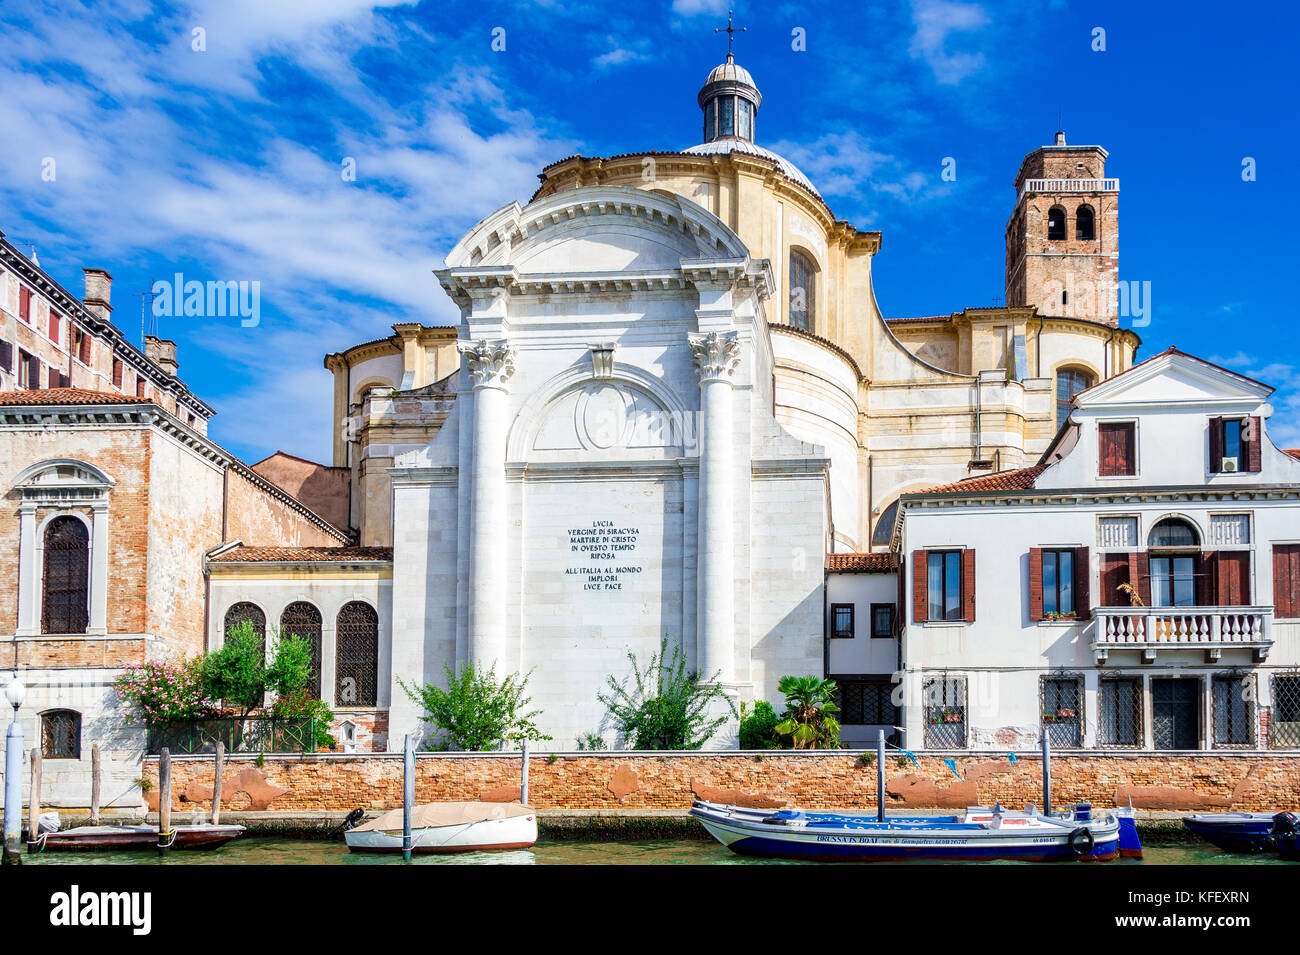 San Geremia è una chiesa di Venezia, in Italia, situata nel sestiere di Cannaregio che si affaccia sul Canal Grande Foto Stock